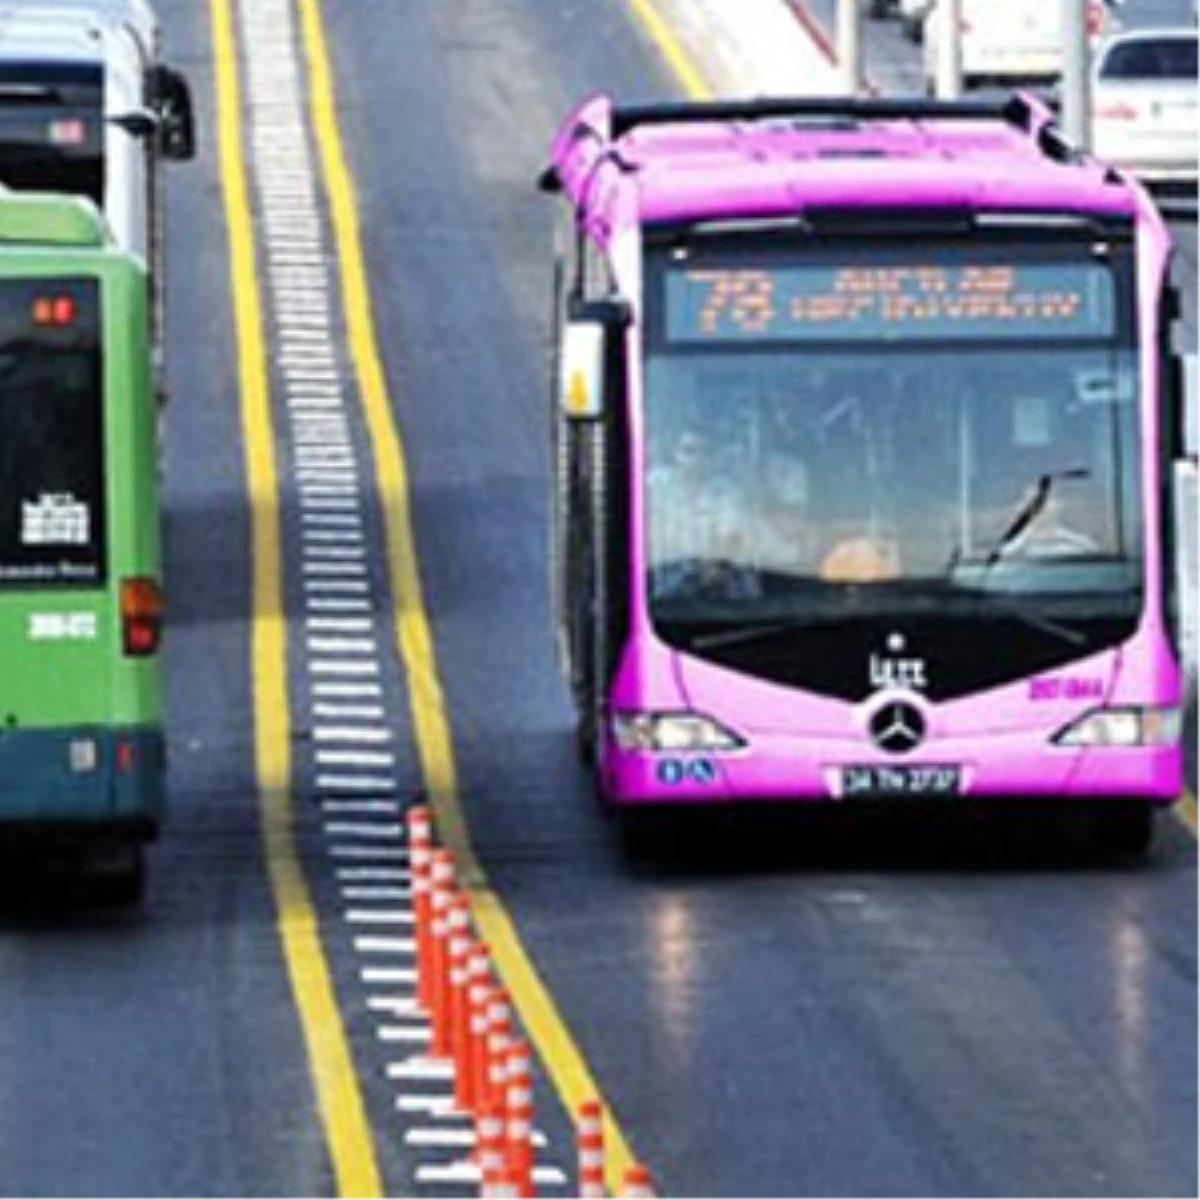 Saadet Partisi'nin İstanbul Vaadi: "Pembe Metrobüs"